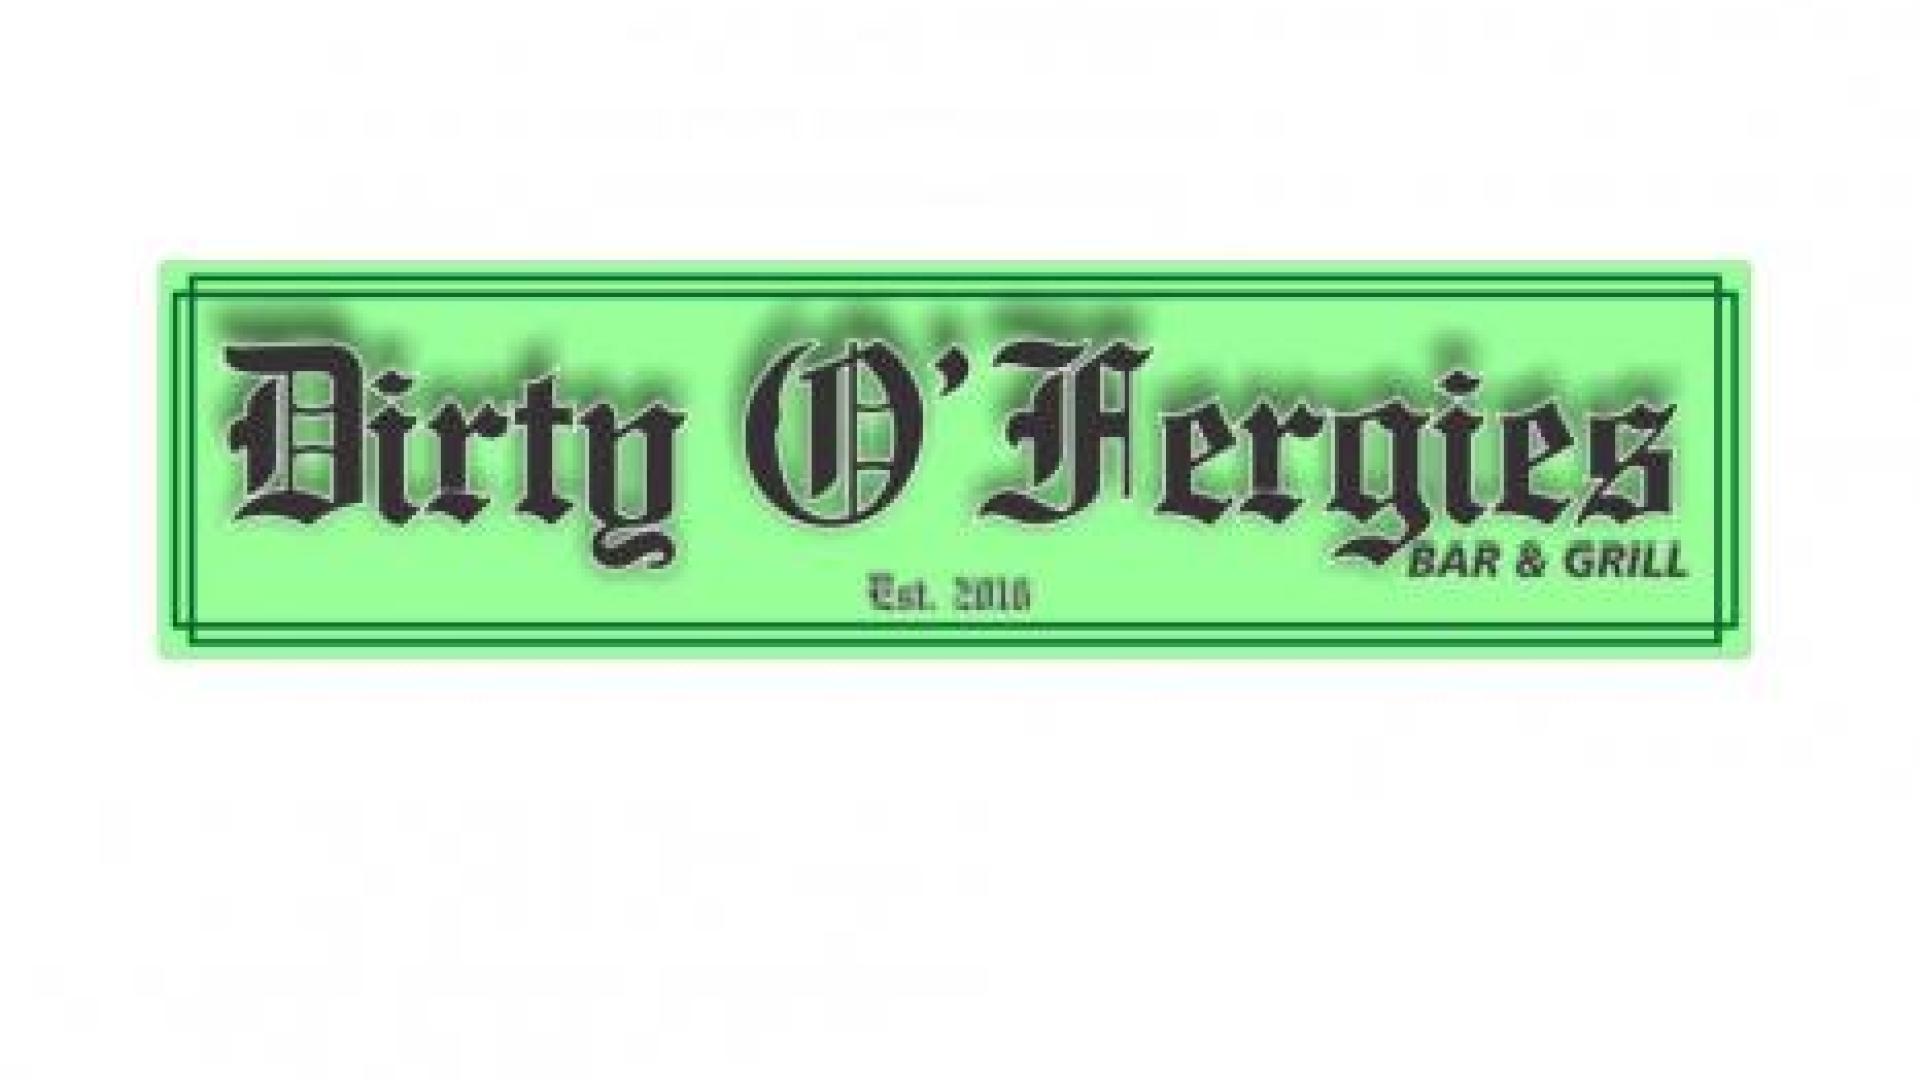 Dirty O'Fergies Bar & Grill signage.